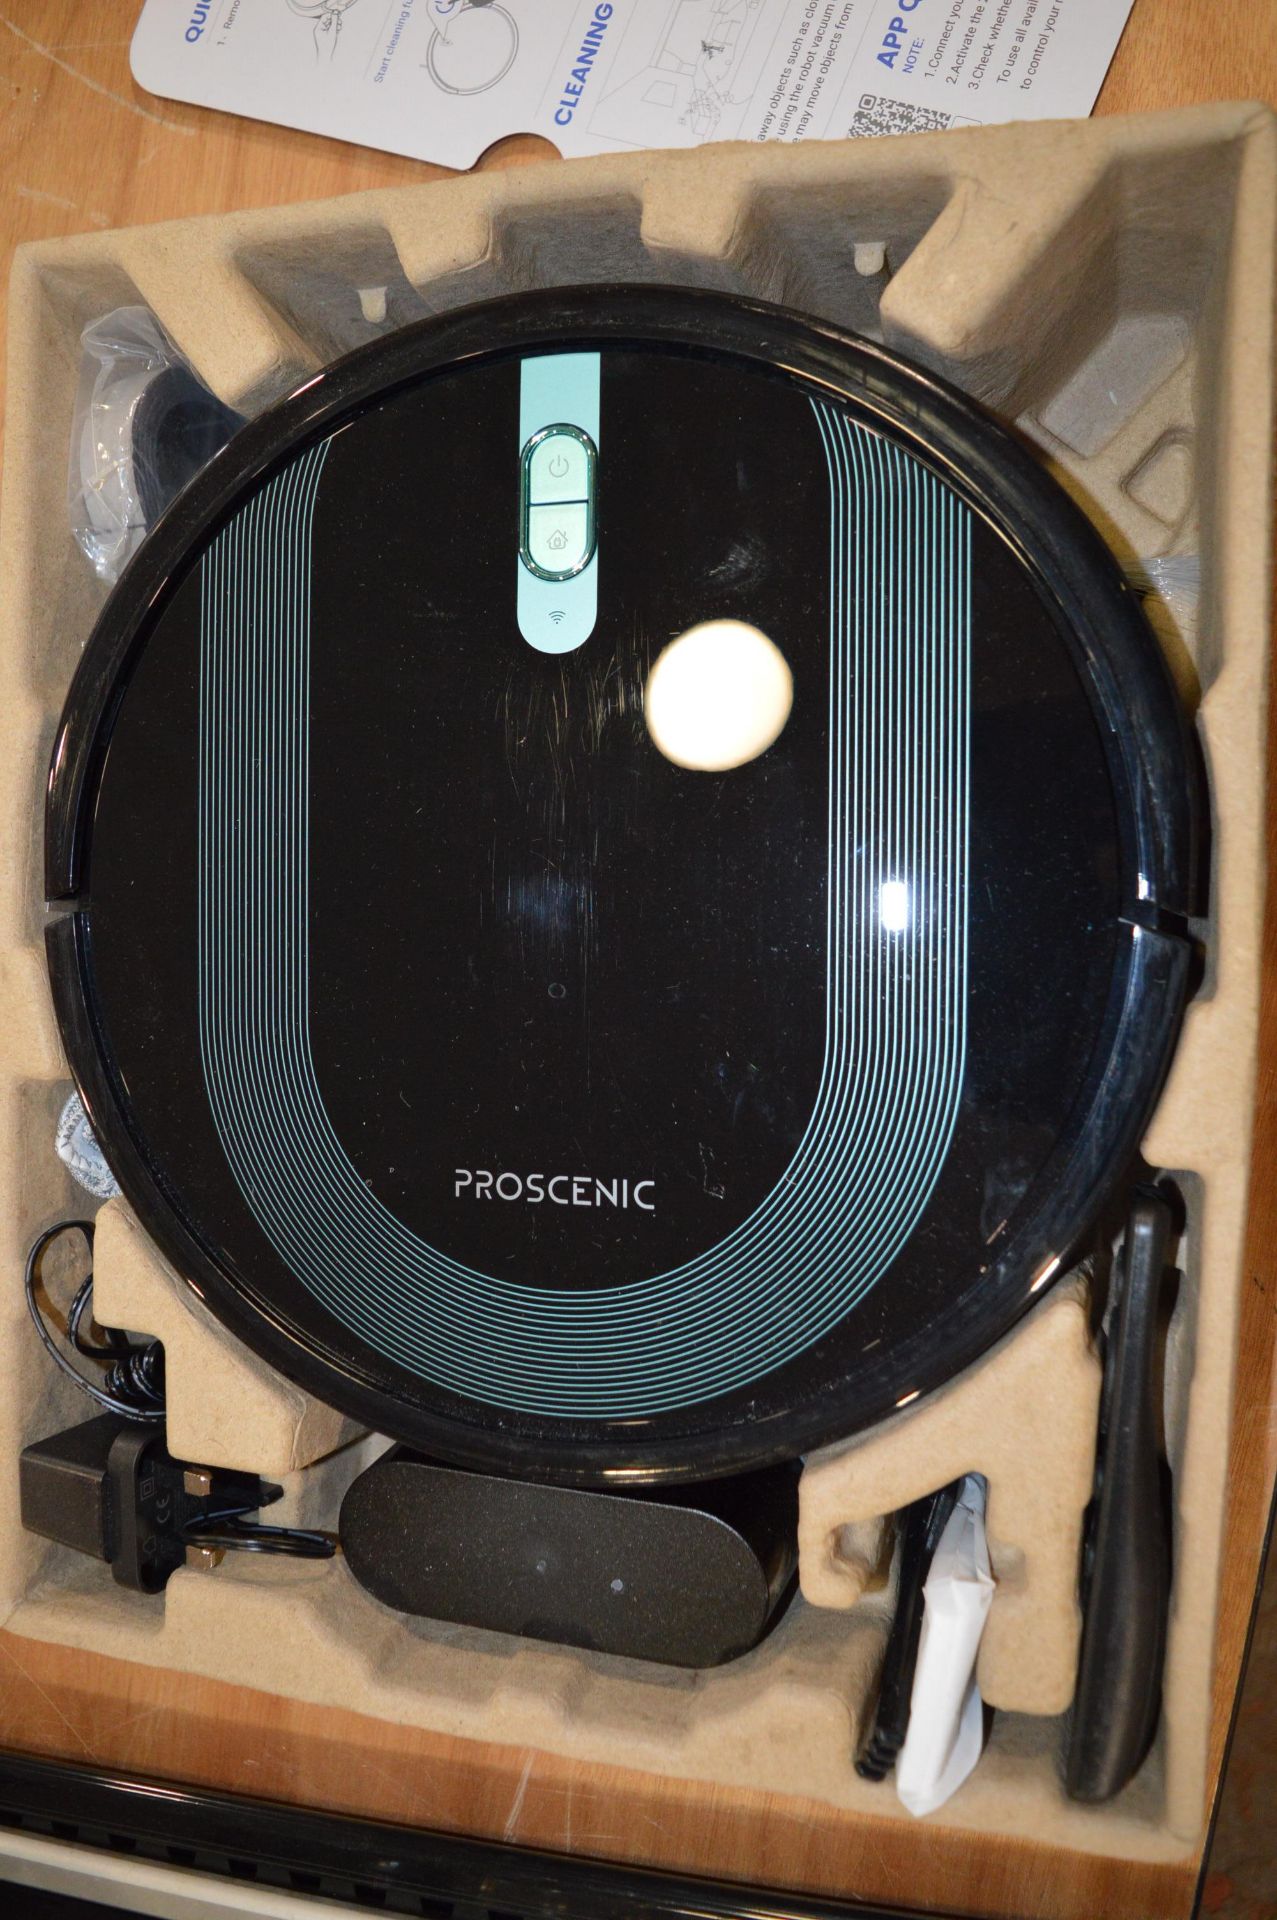 *Proscenic 850T Robot Vacuum Cleaner